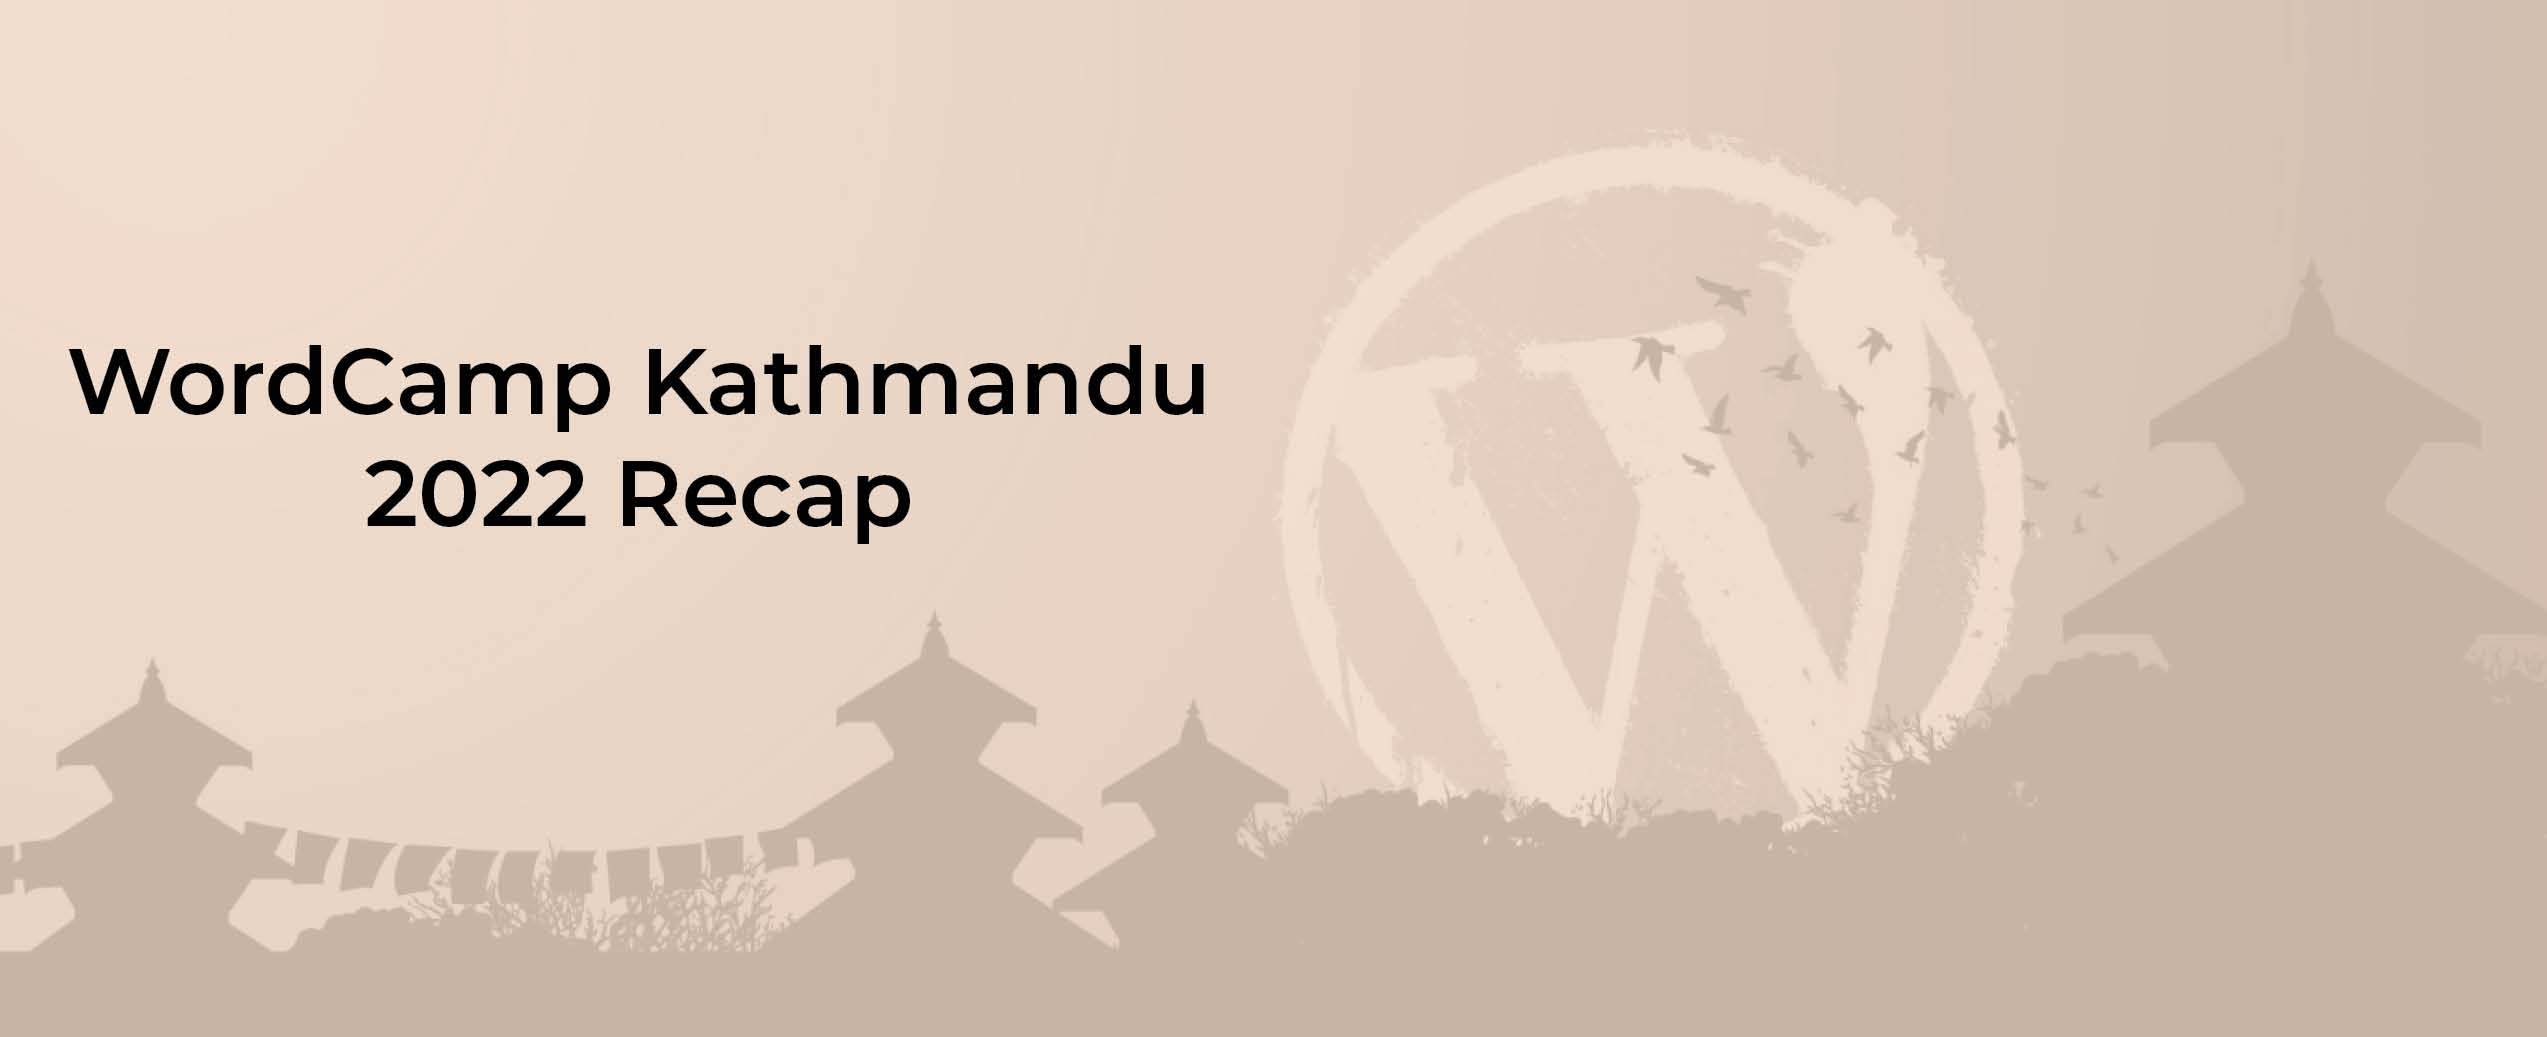 WordCamp Kathmandu 2022 Recap